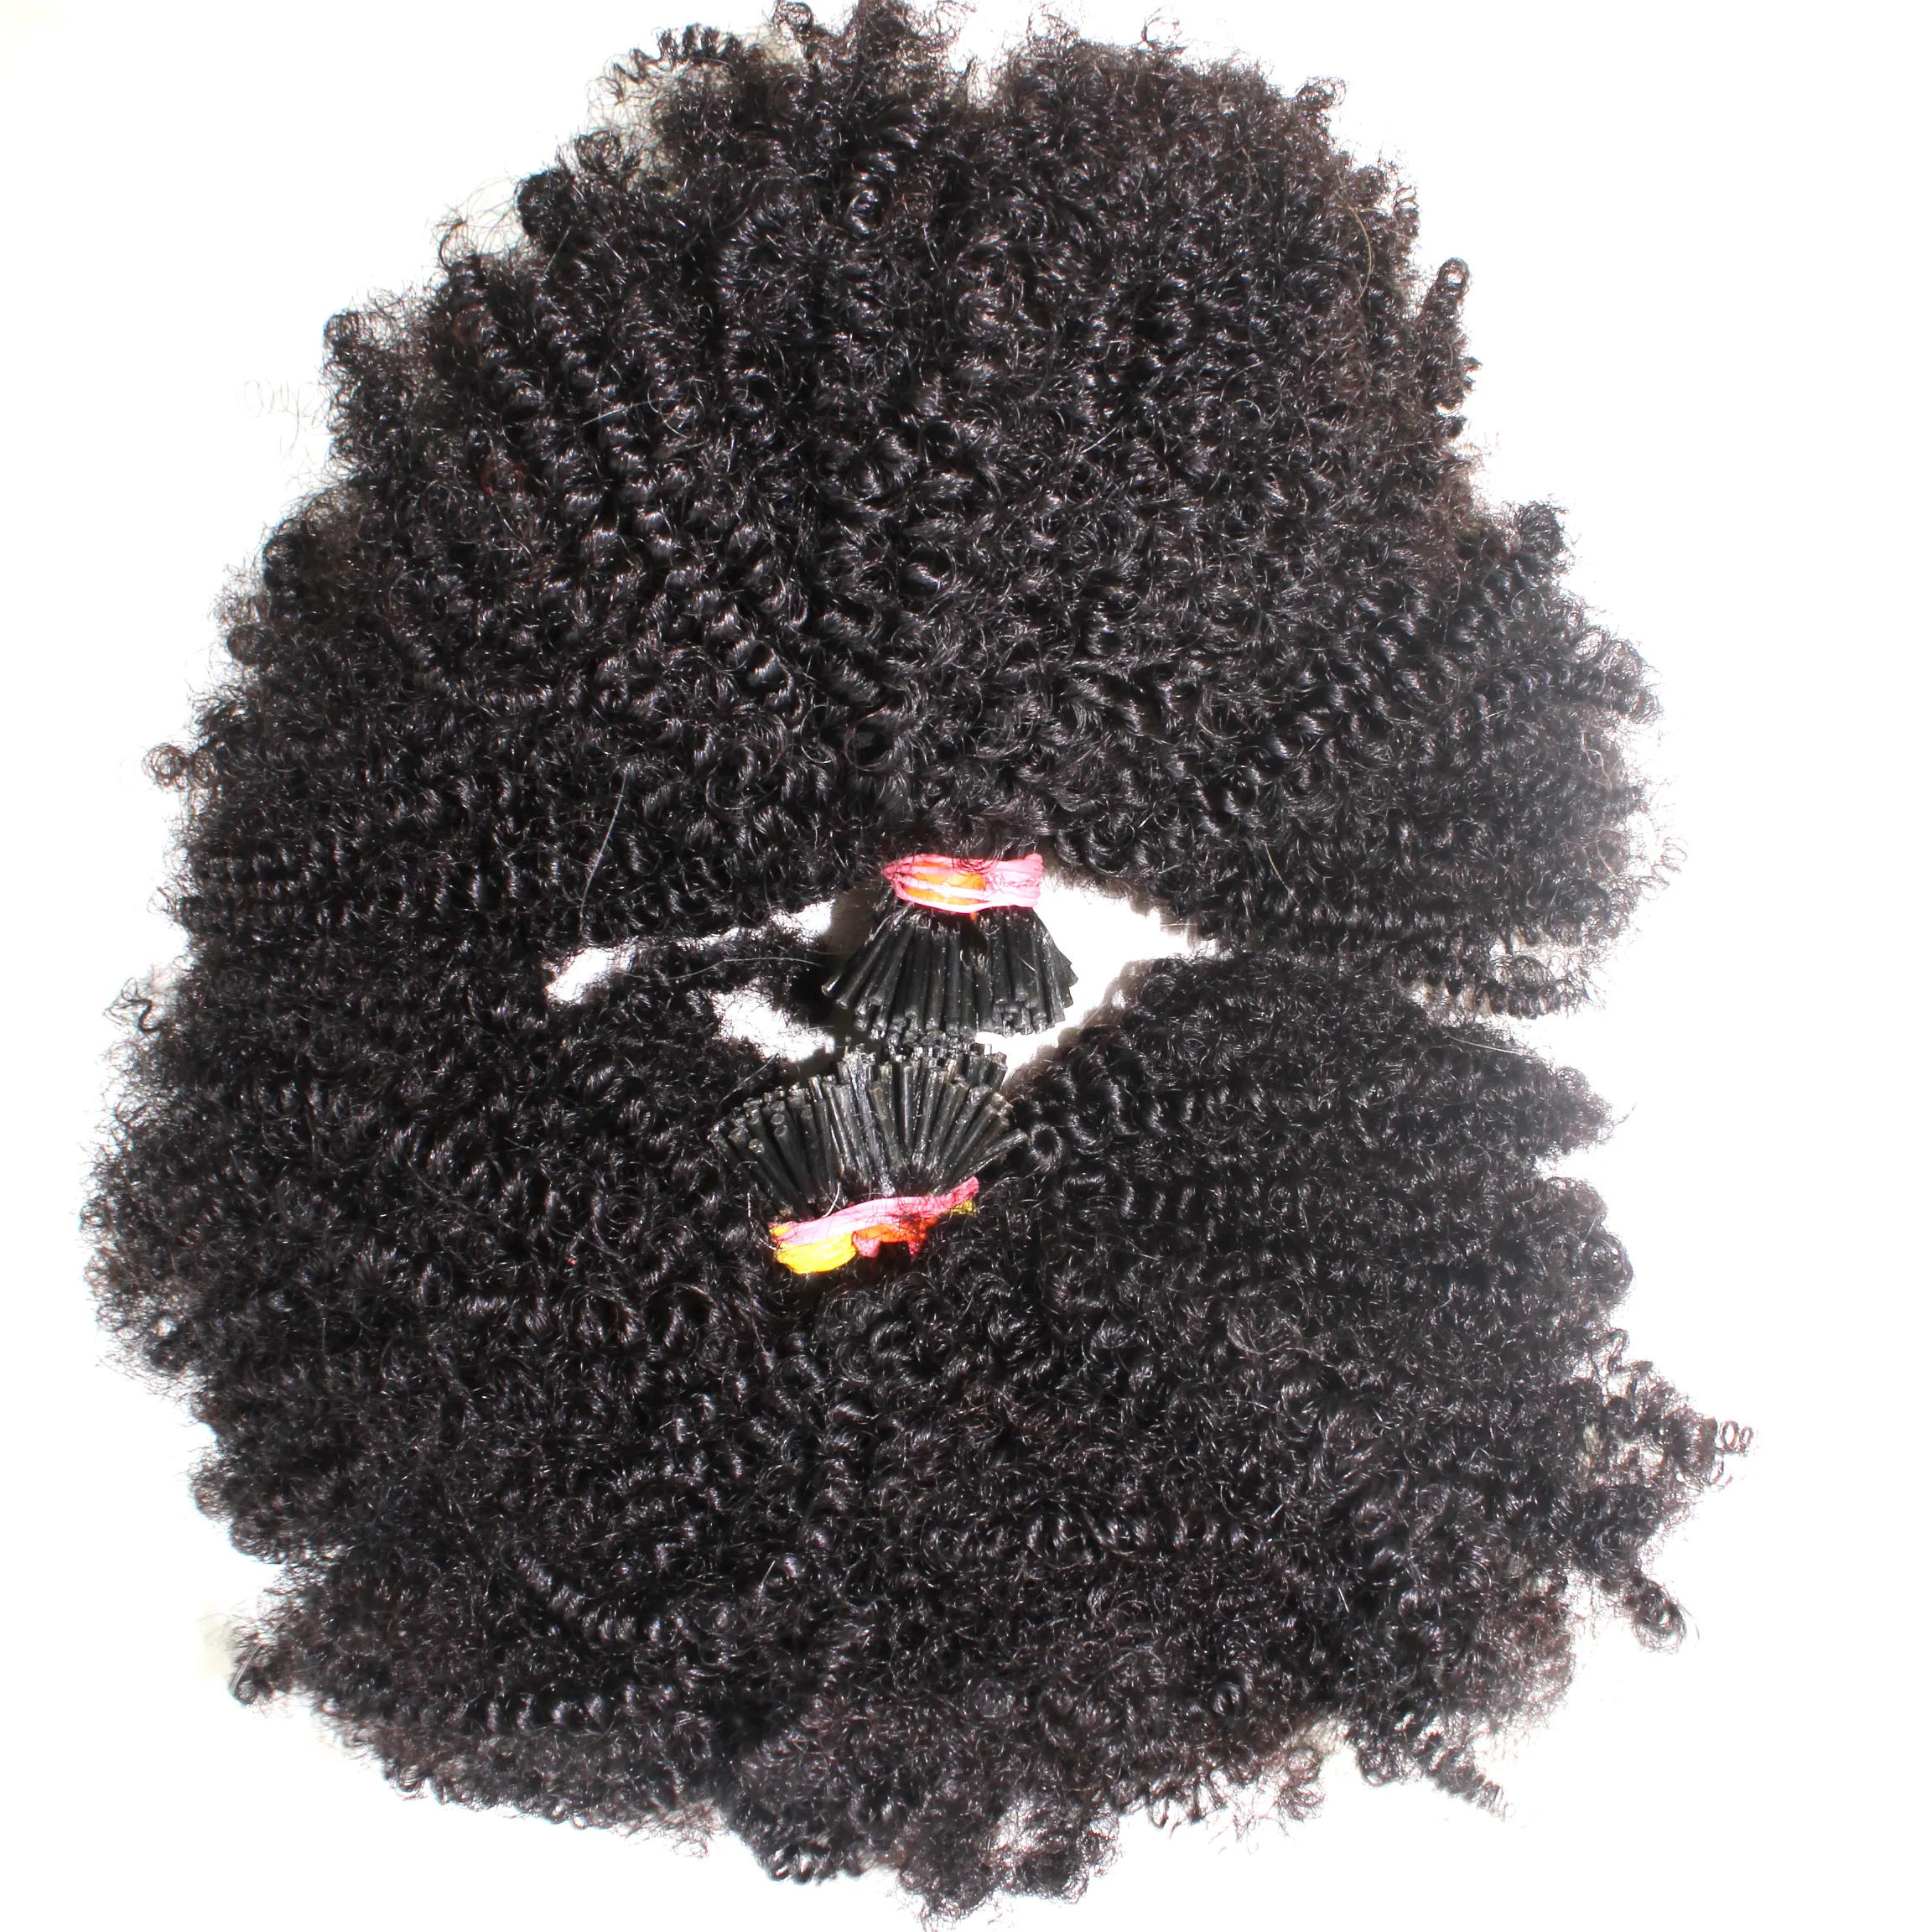 Extensiones de cabello humano de alta calidad, cabello crudo rizado y rizado, extensiones de cabello rizado Micro Link ITip para mujeres negras